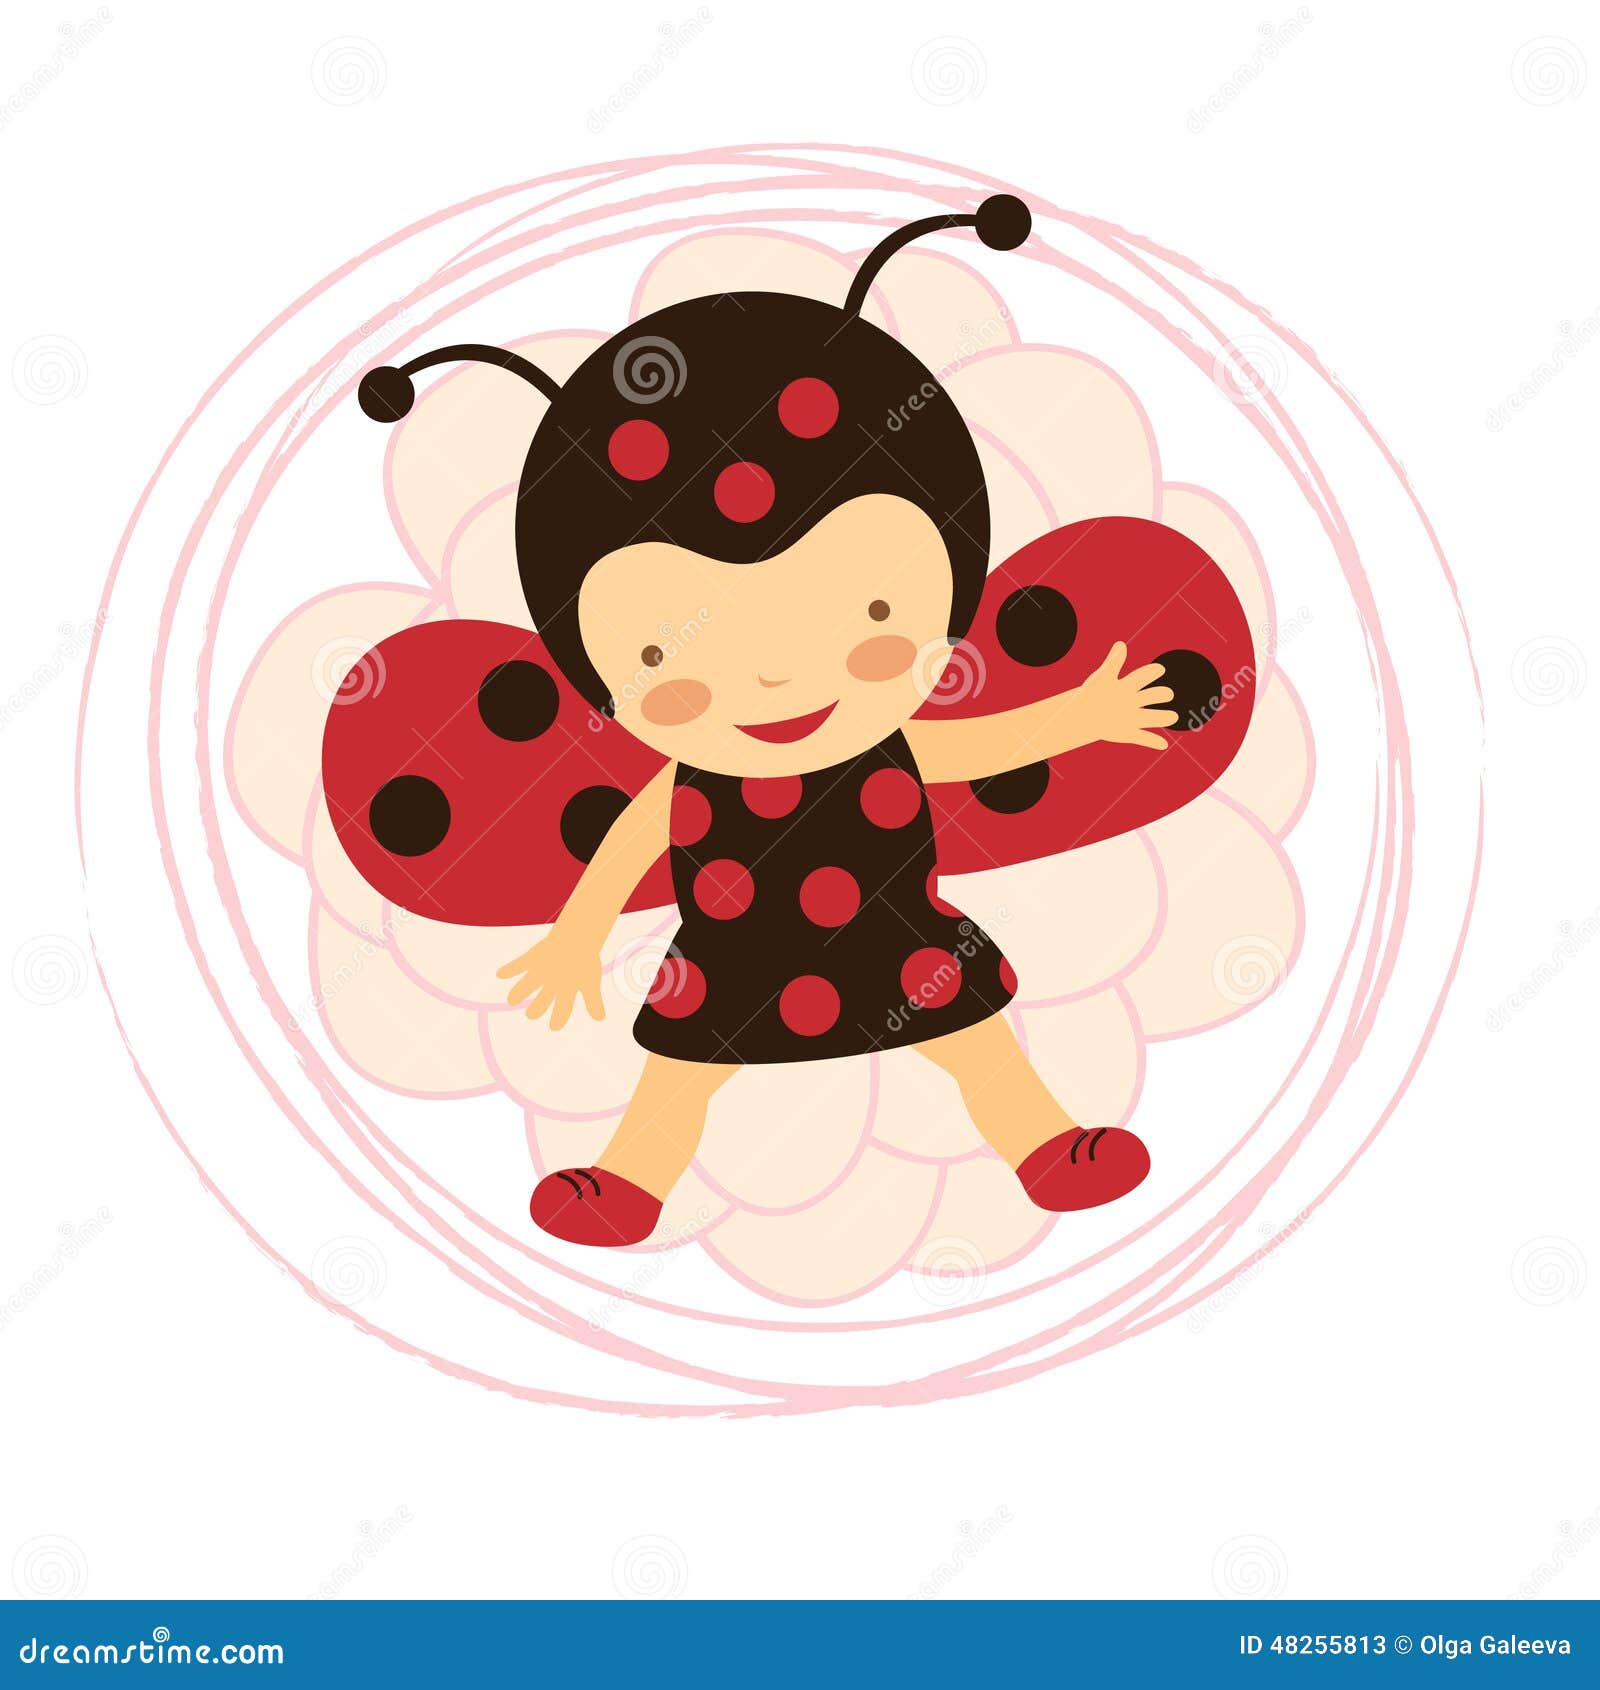 ladybug baby clipart - photo #30